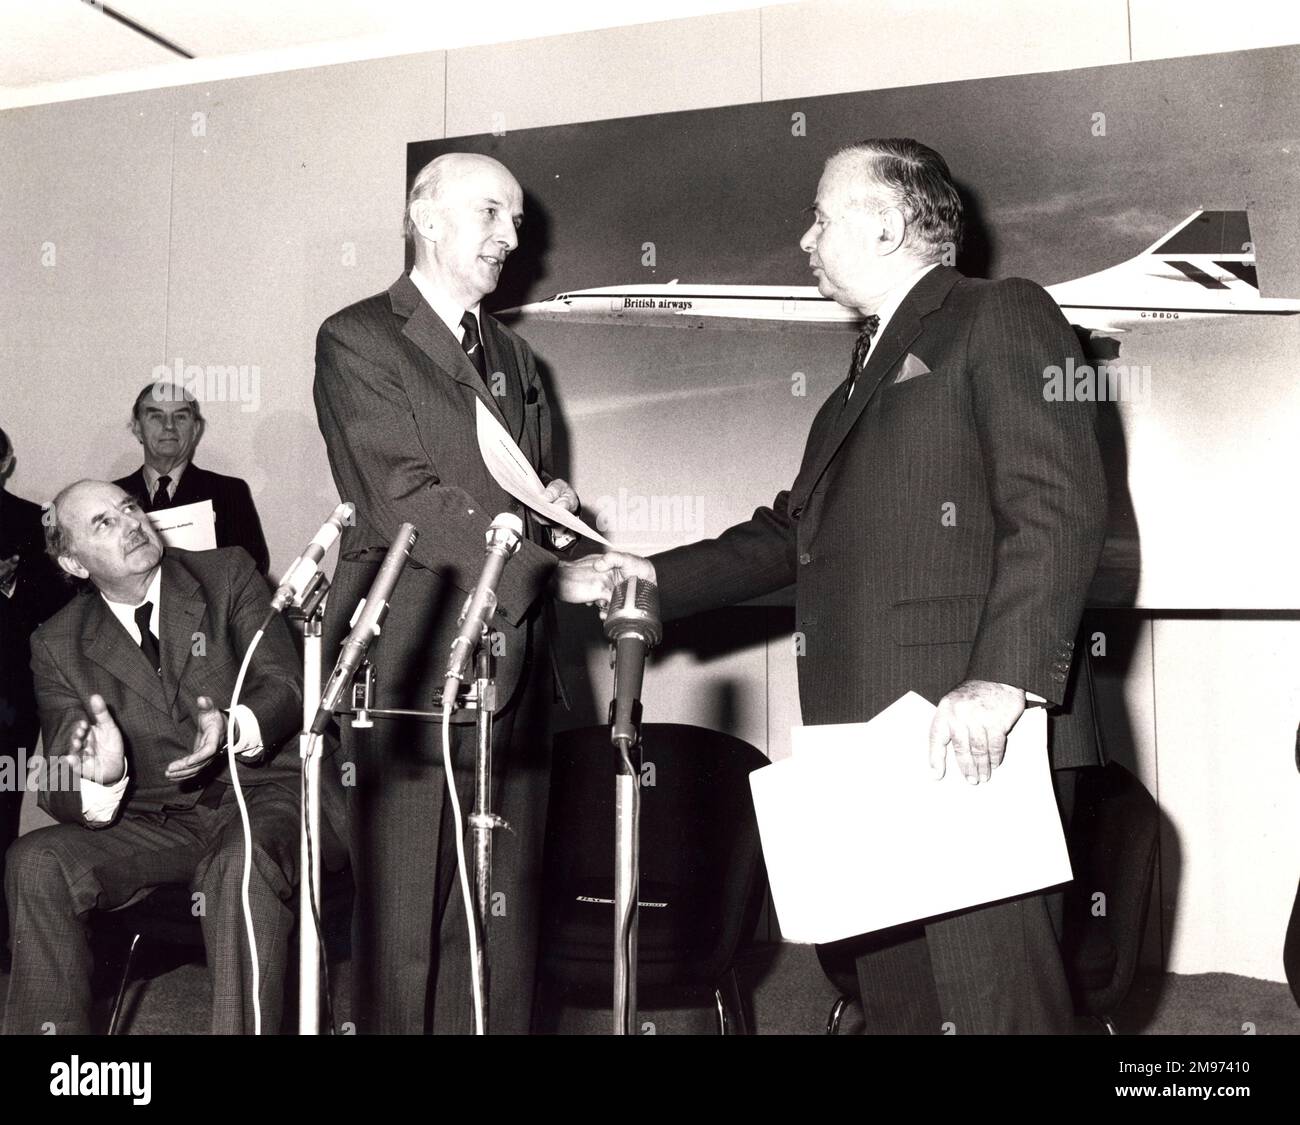 Als Vorsitzender der BAC bestand eine der letzten Pflichten von Sir George Edwards darin, Lord Boyd-Carpenter, den Vorsitzenden der CAA, das britische Musterzulassungszeugnis von Concorde für Lufttüchtigkeit zu akzeptieren. Stockfoto